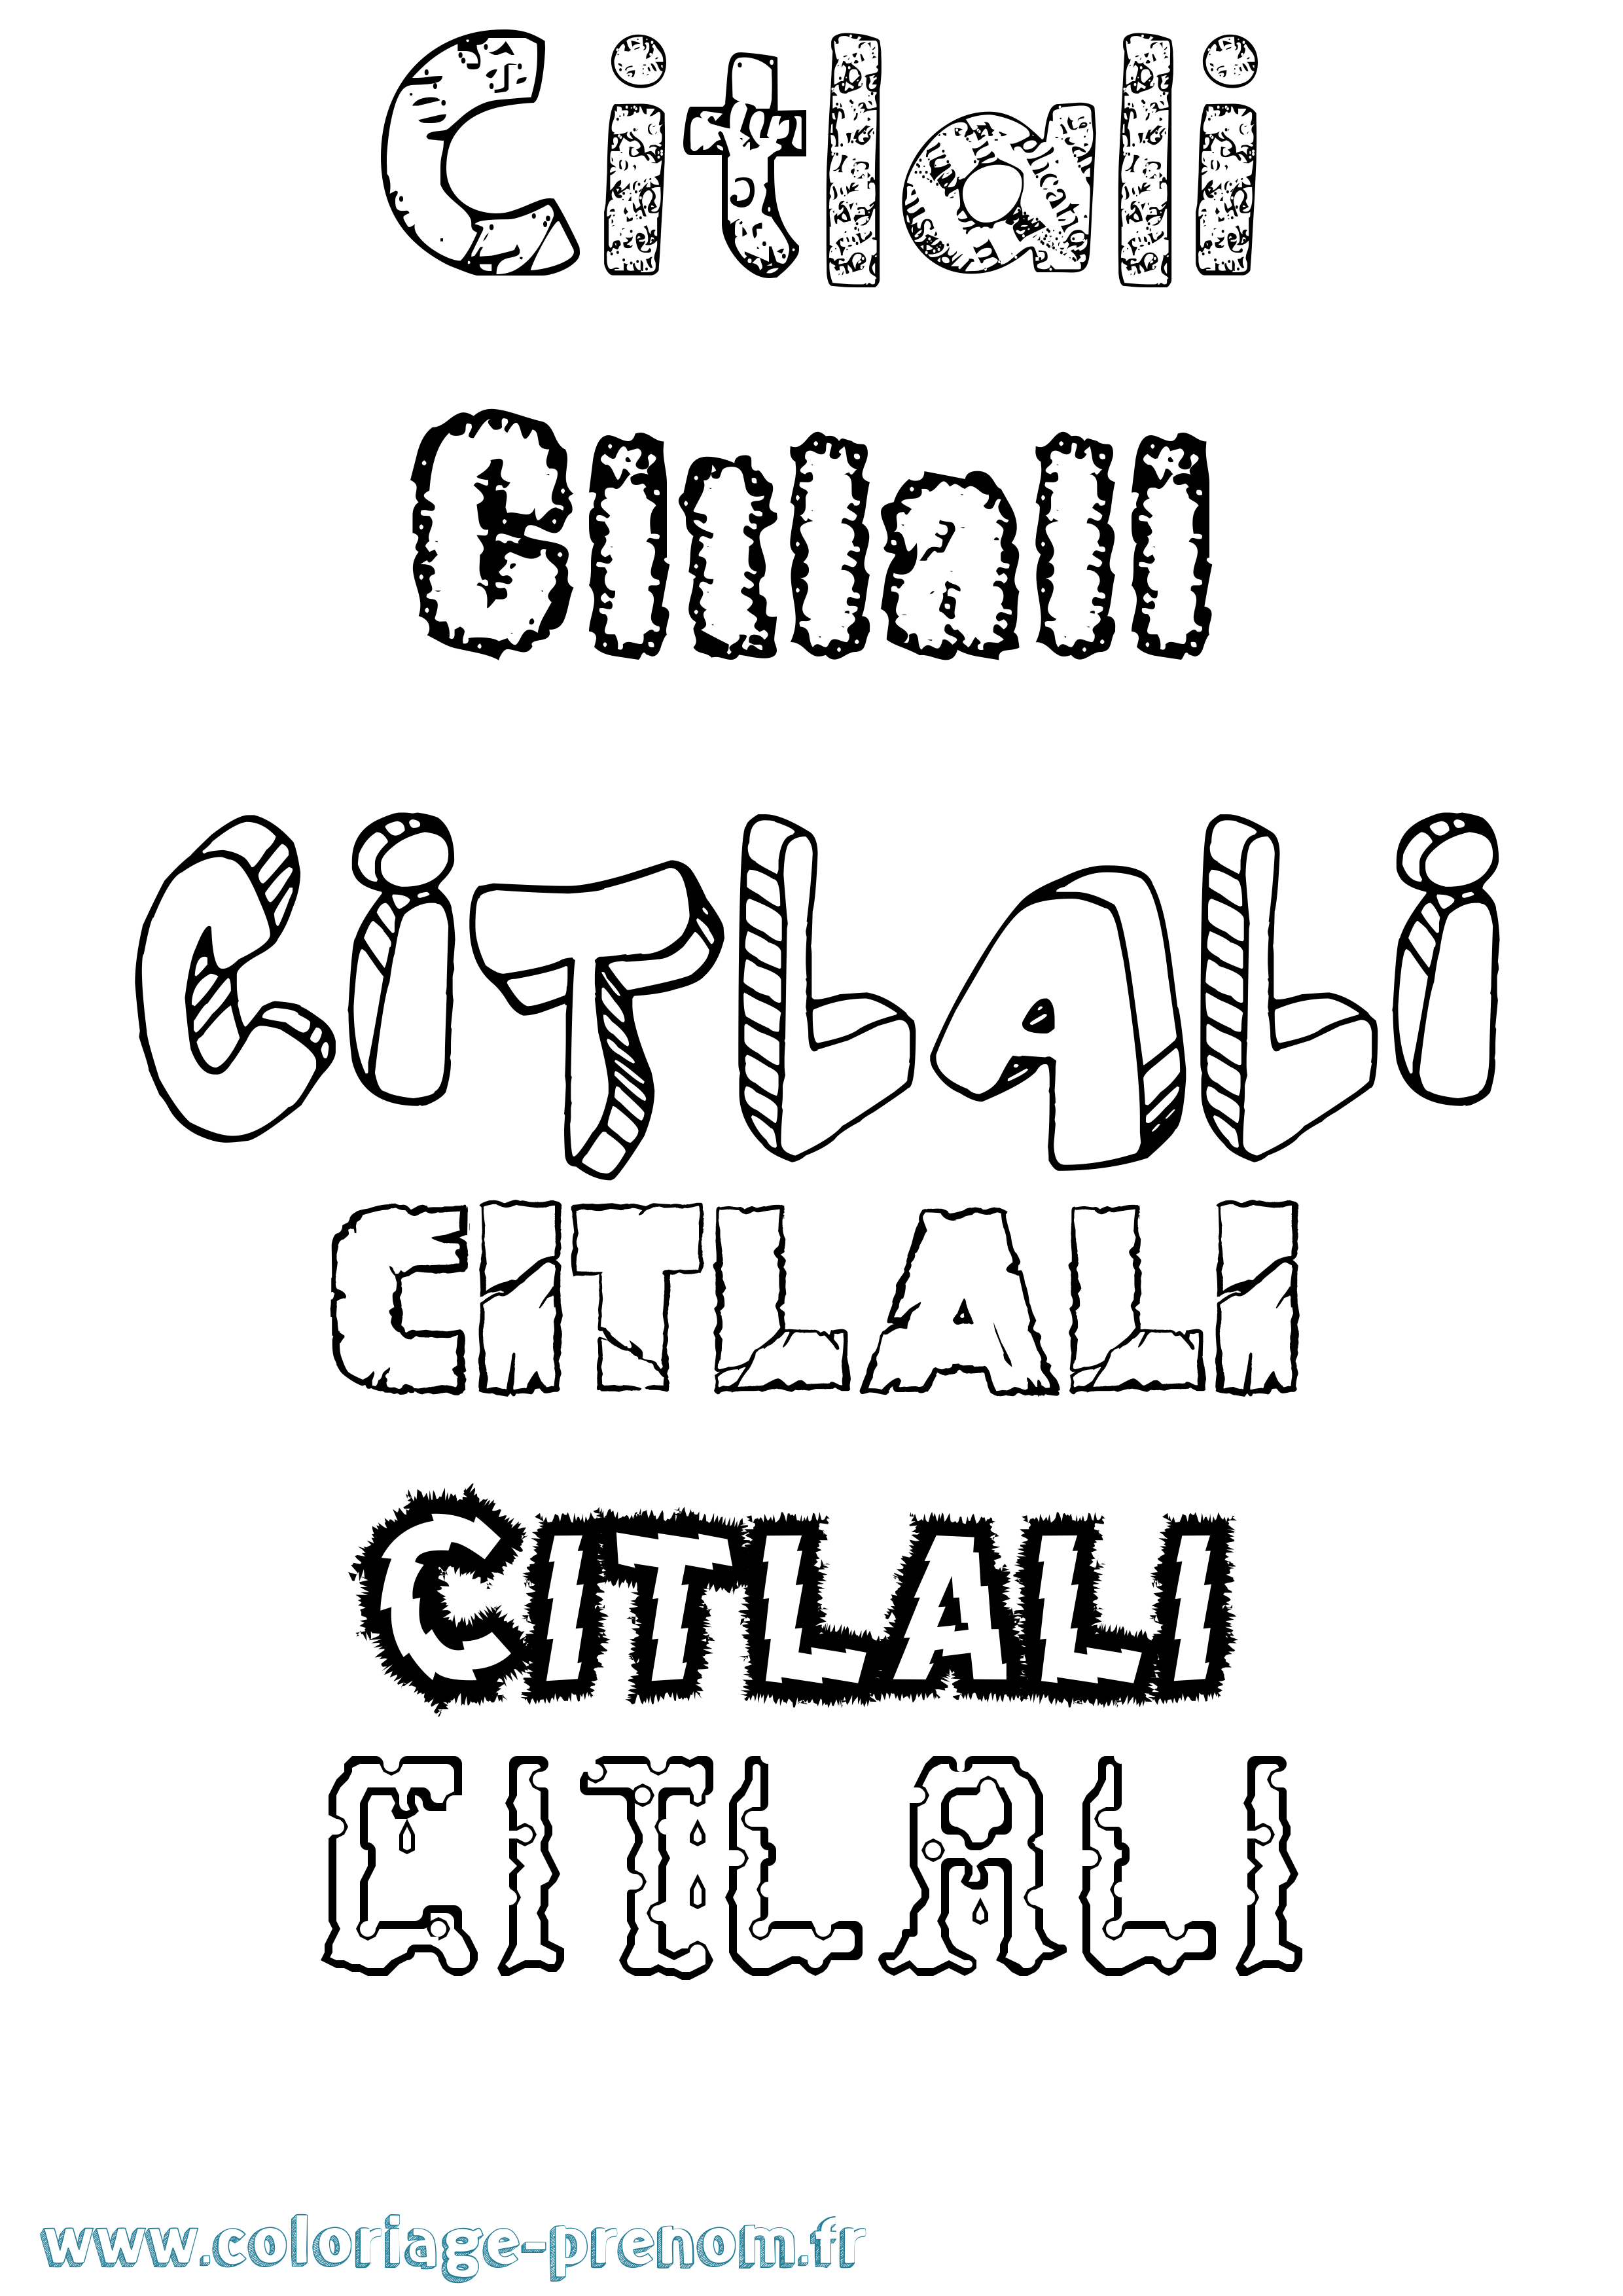 Coloriage prénom Citlali Destructuré